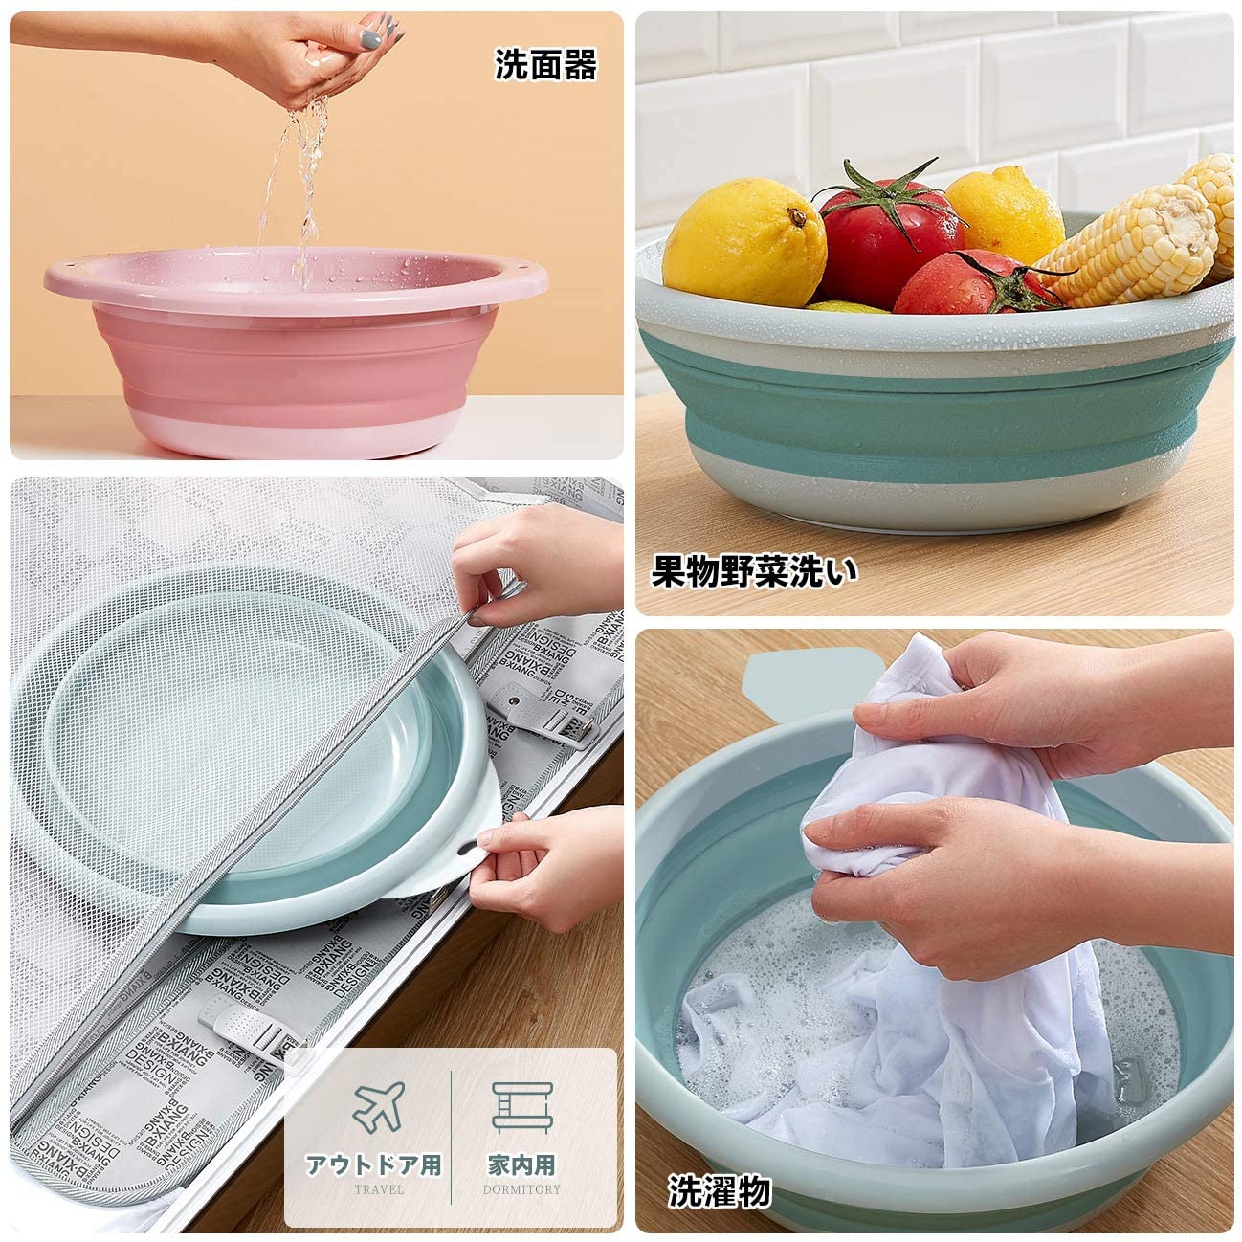 MM&UU(エムエムアンドユーユー) 洗い桶 折り畳み 2点セット ピンクとブルーの商品画像6 